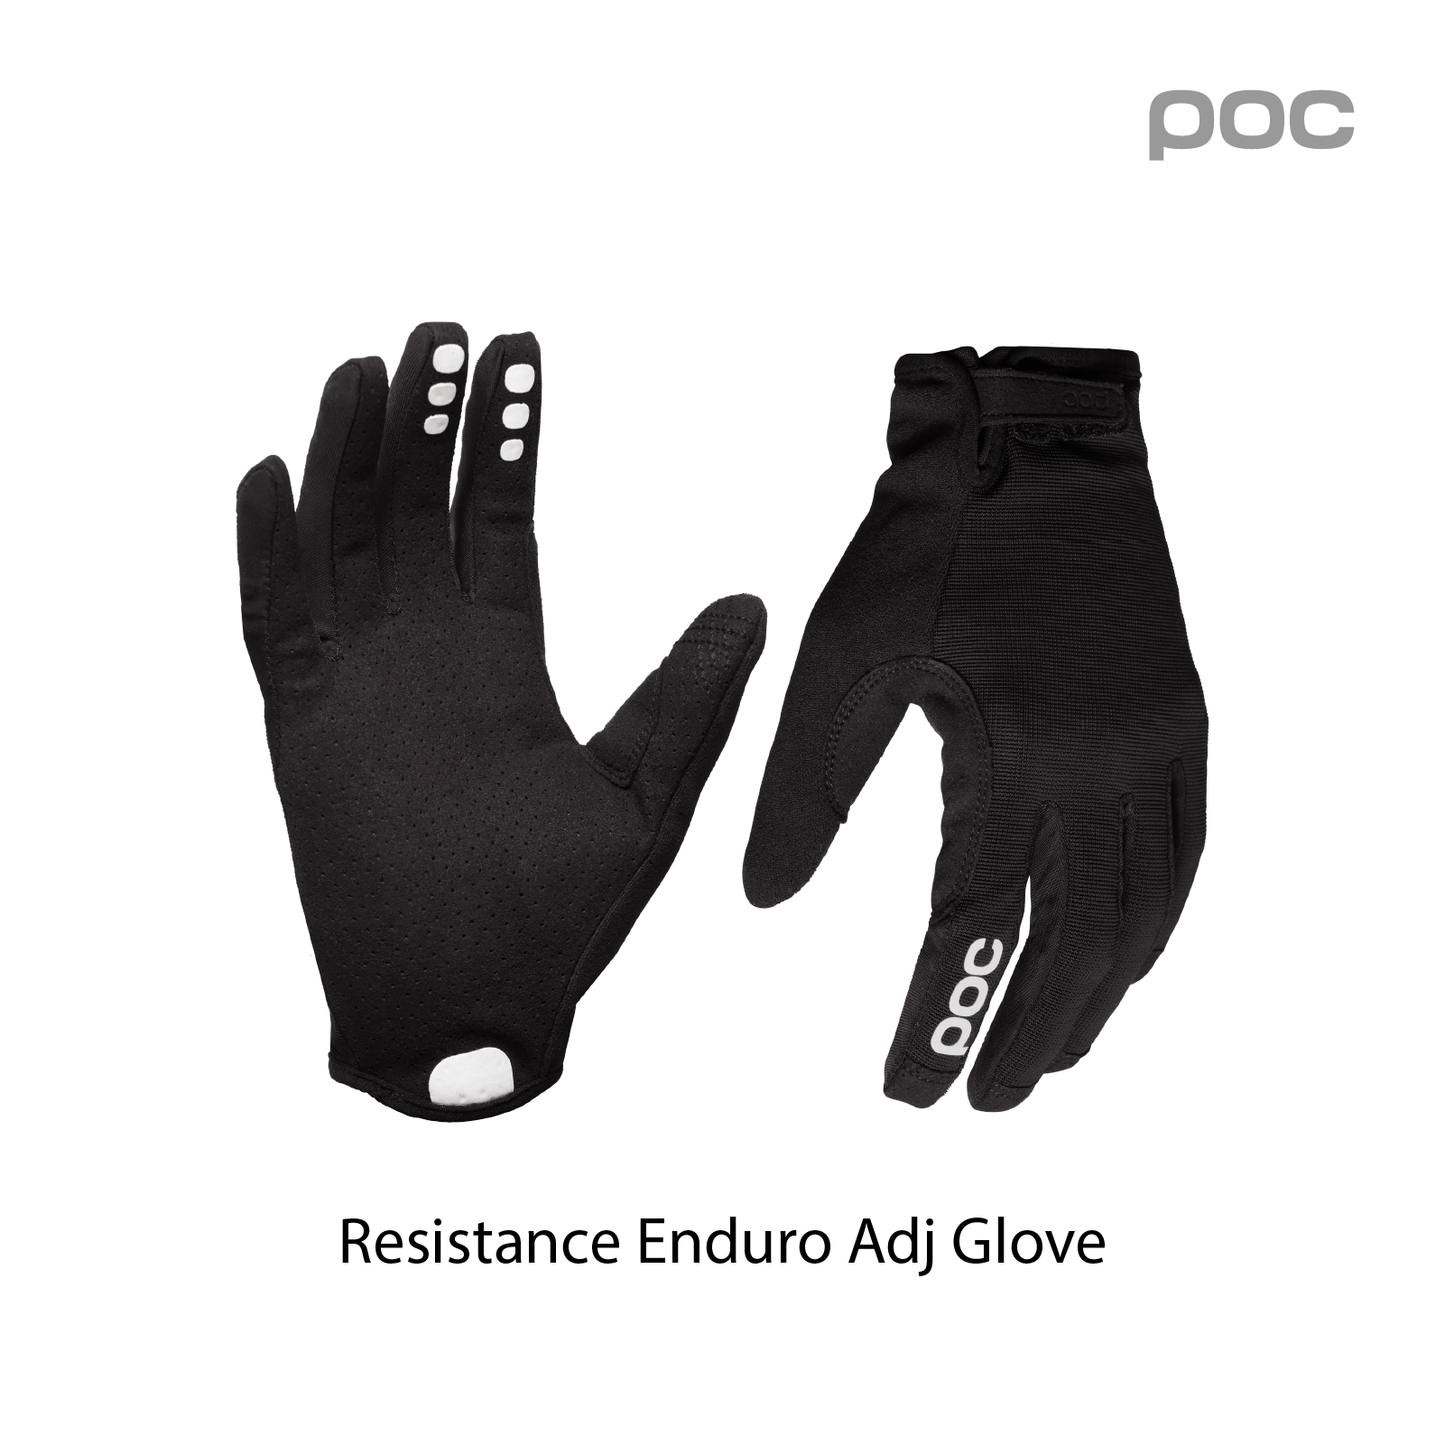 Resistance Enduro Adj Glove Uranium Black/Uranium Black